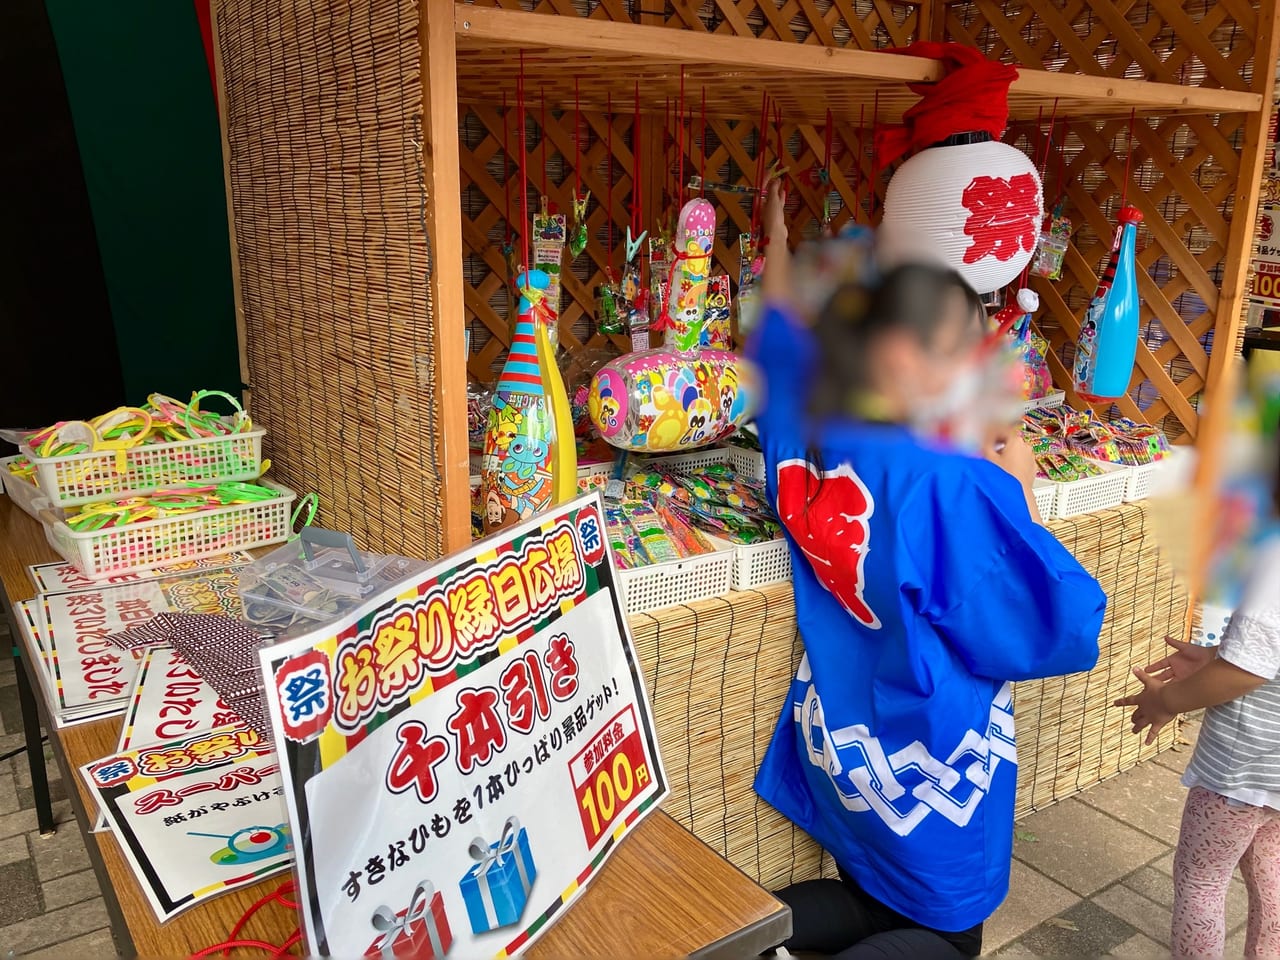 ちびっこ集まれ！ 100円であそべる縁日がいっぱいあるよ。「アリオ札幌」で夏祭り開催中。